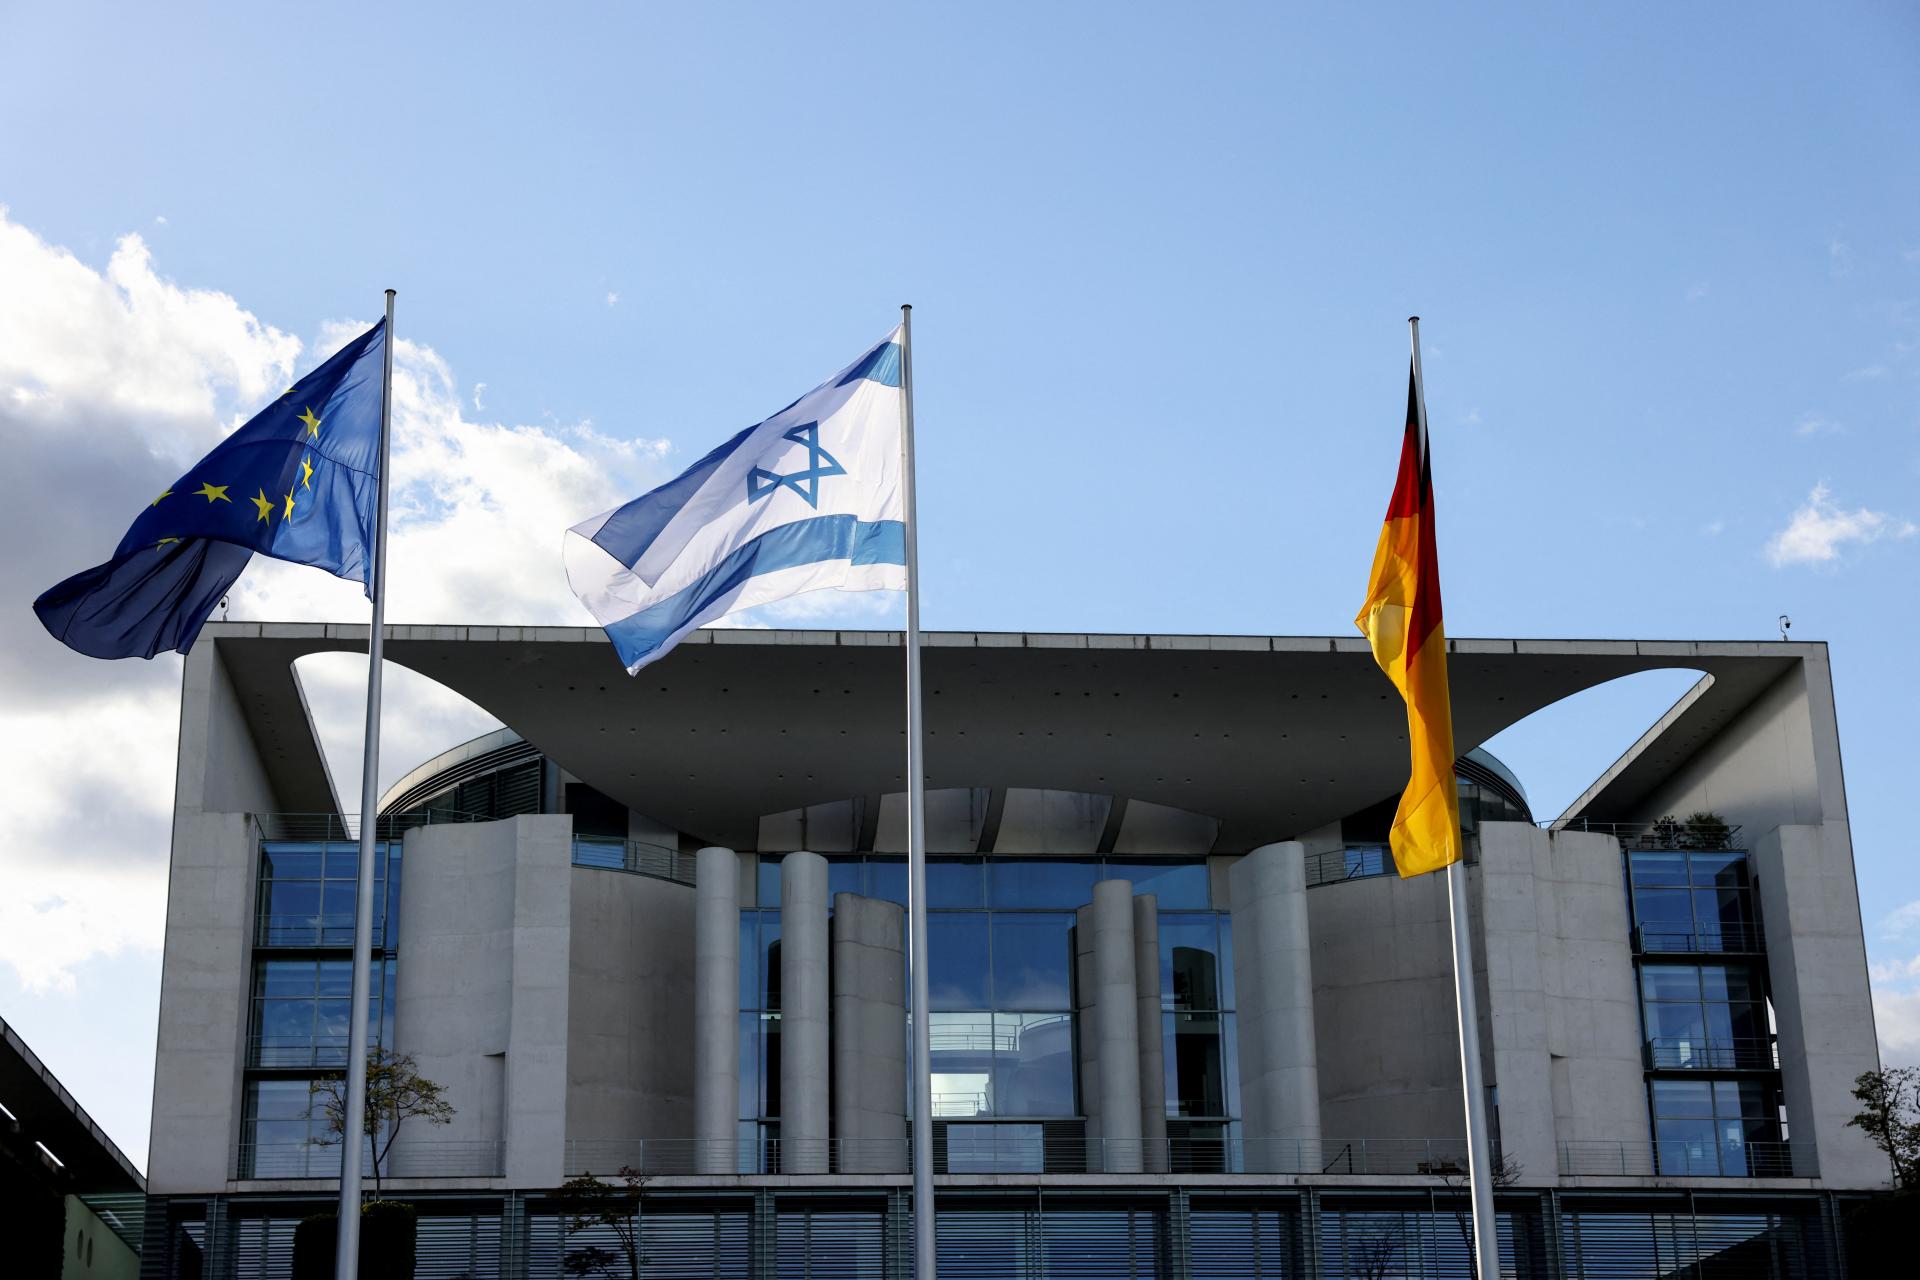 Nemecký kancelár Scholz uistil Izrael o podpore. Berlín však preskúma aj pomoc pre Palestínčanov